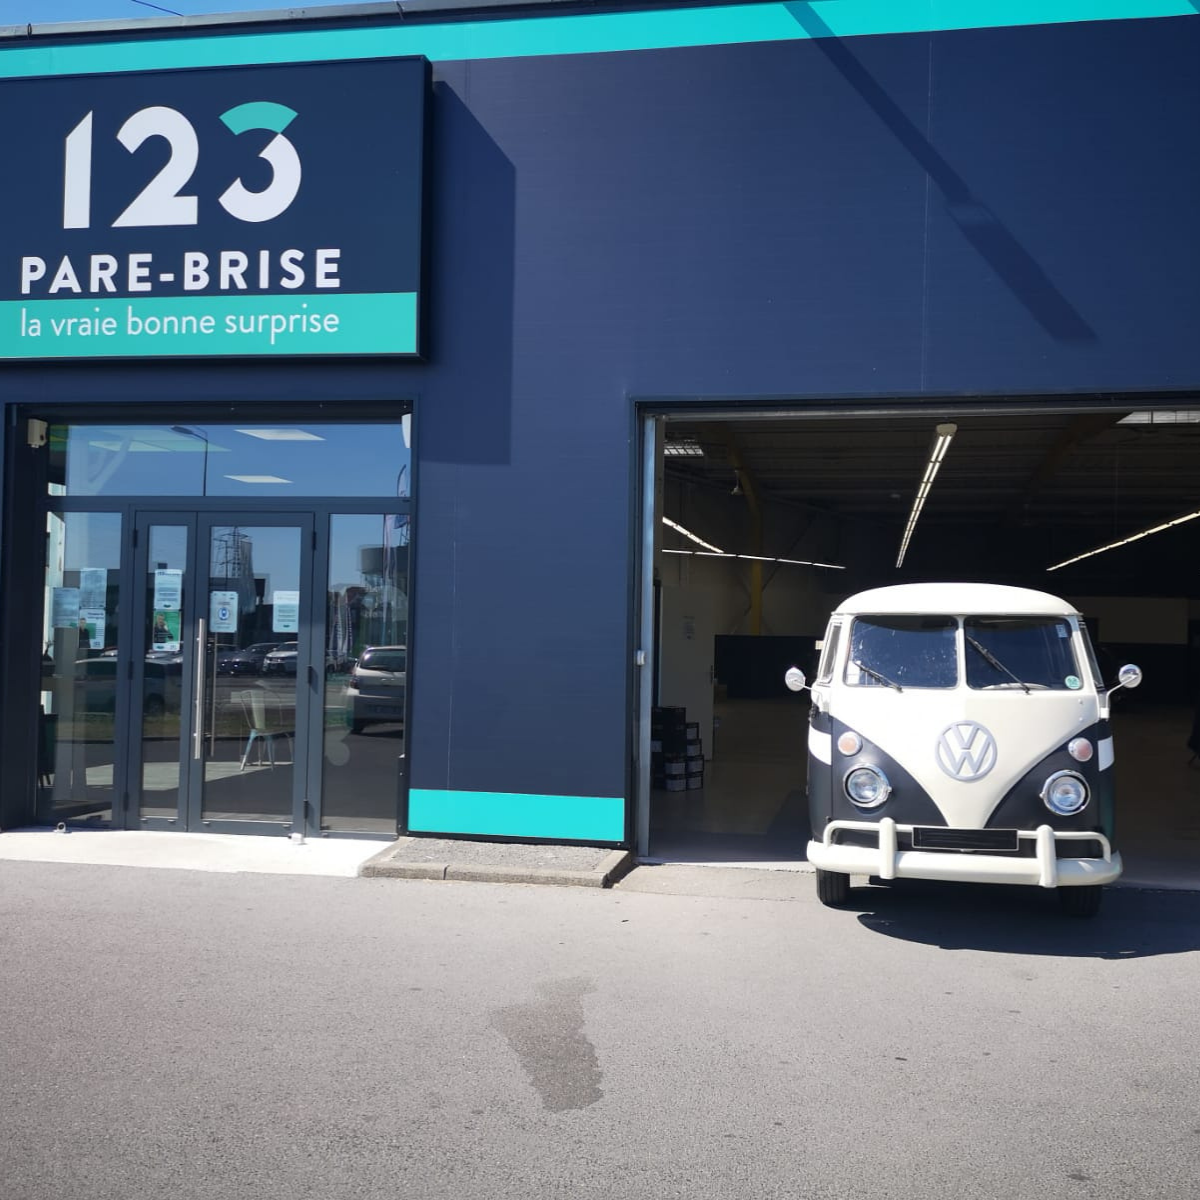 Les logos des marques de voiture : Combi Van VW devant notre agence 123 Pare-Brise Villeneuve d'Ascq.